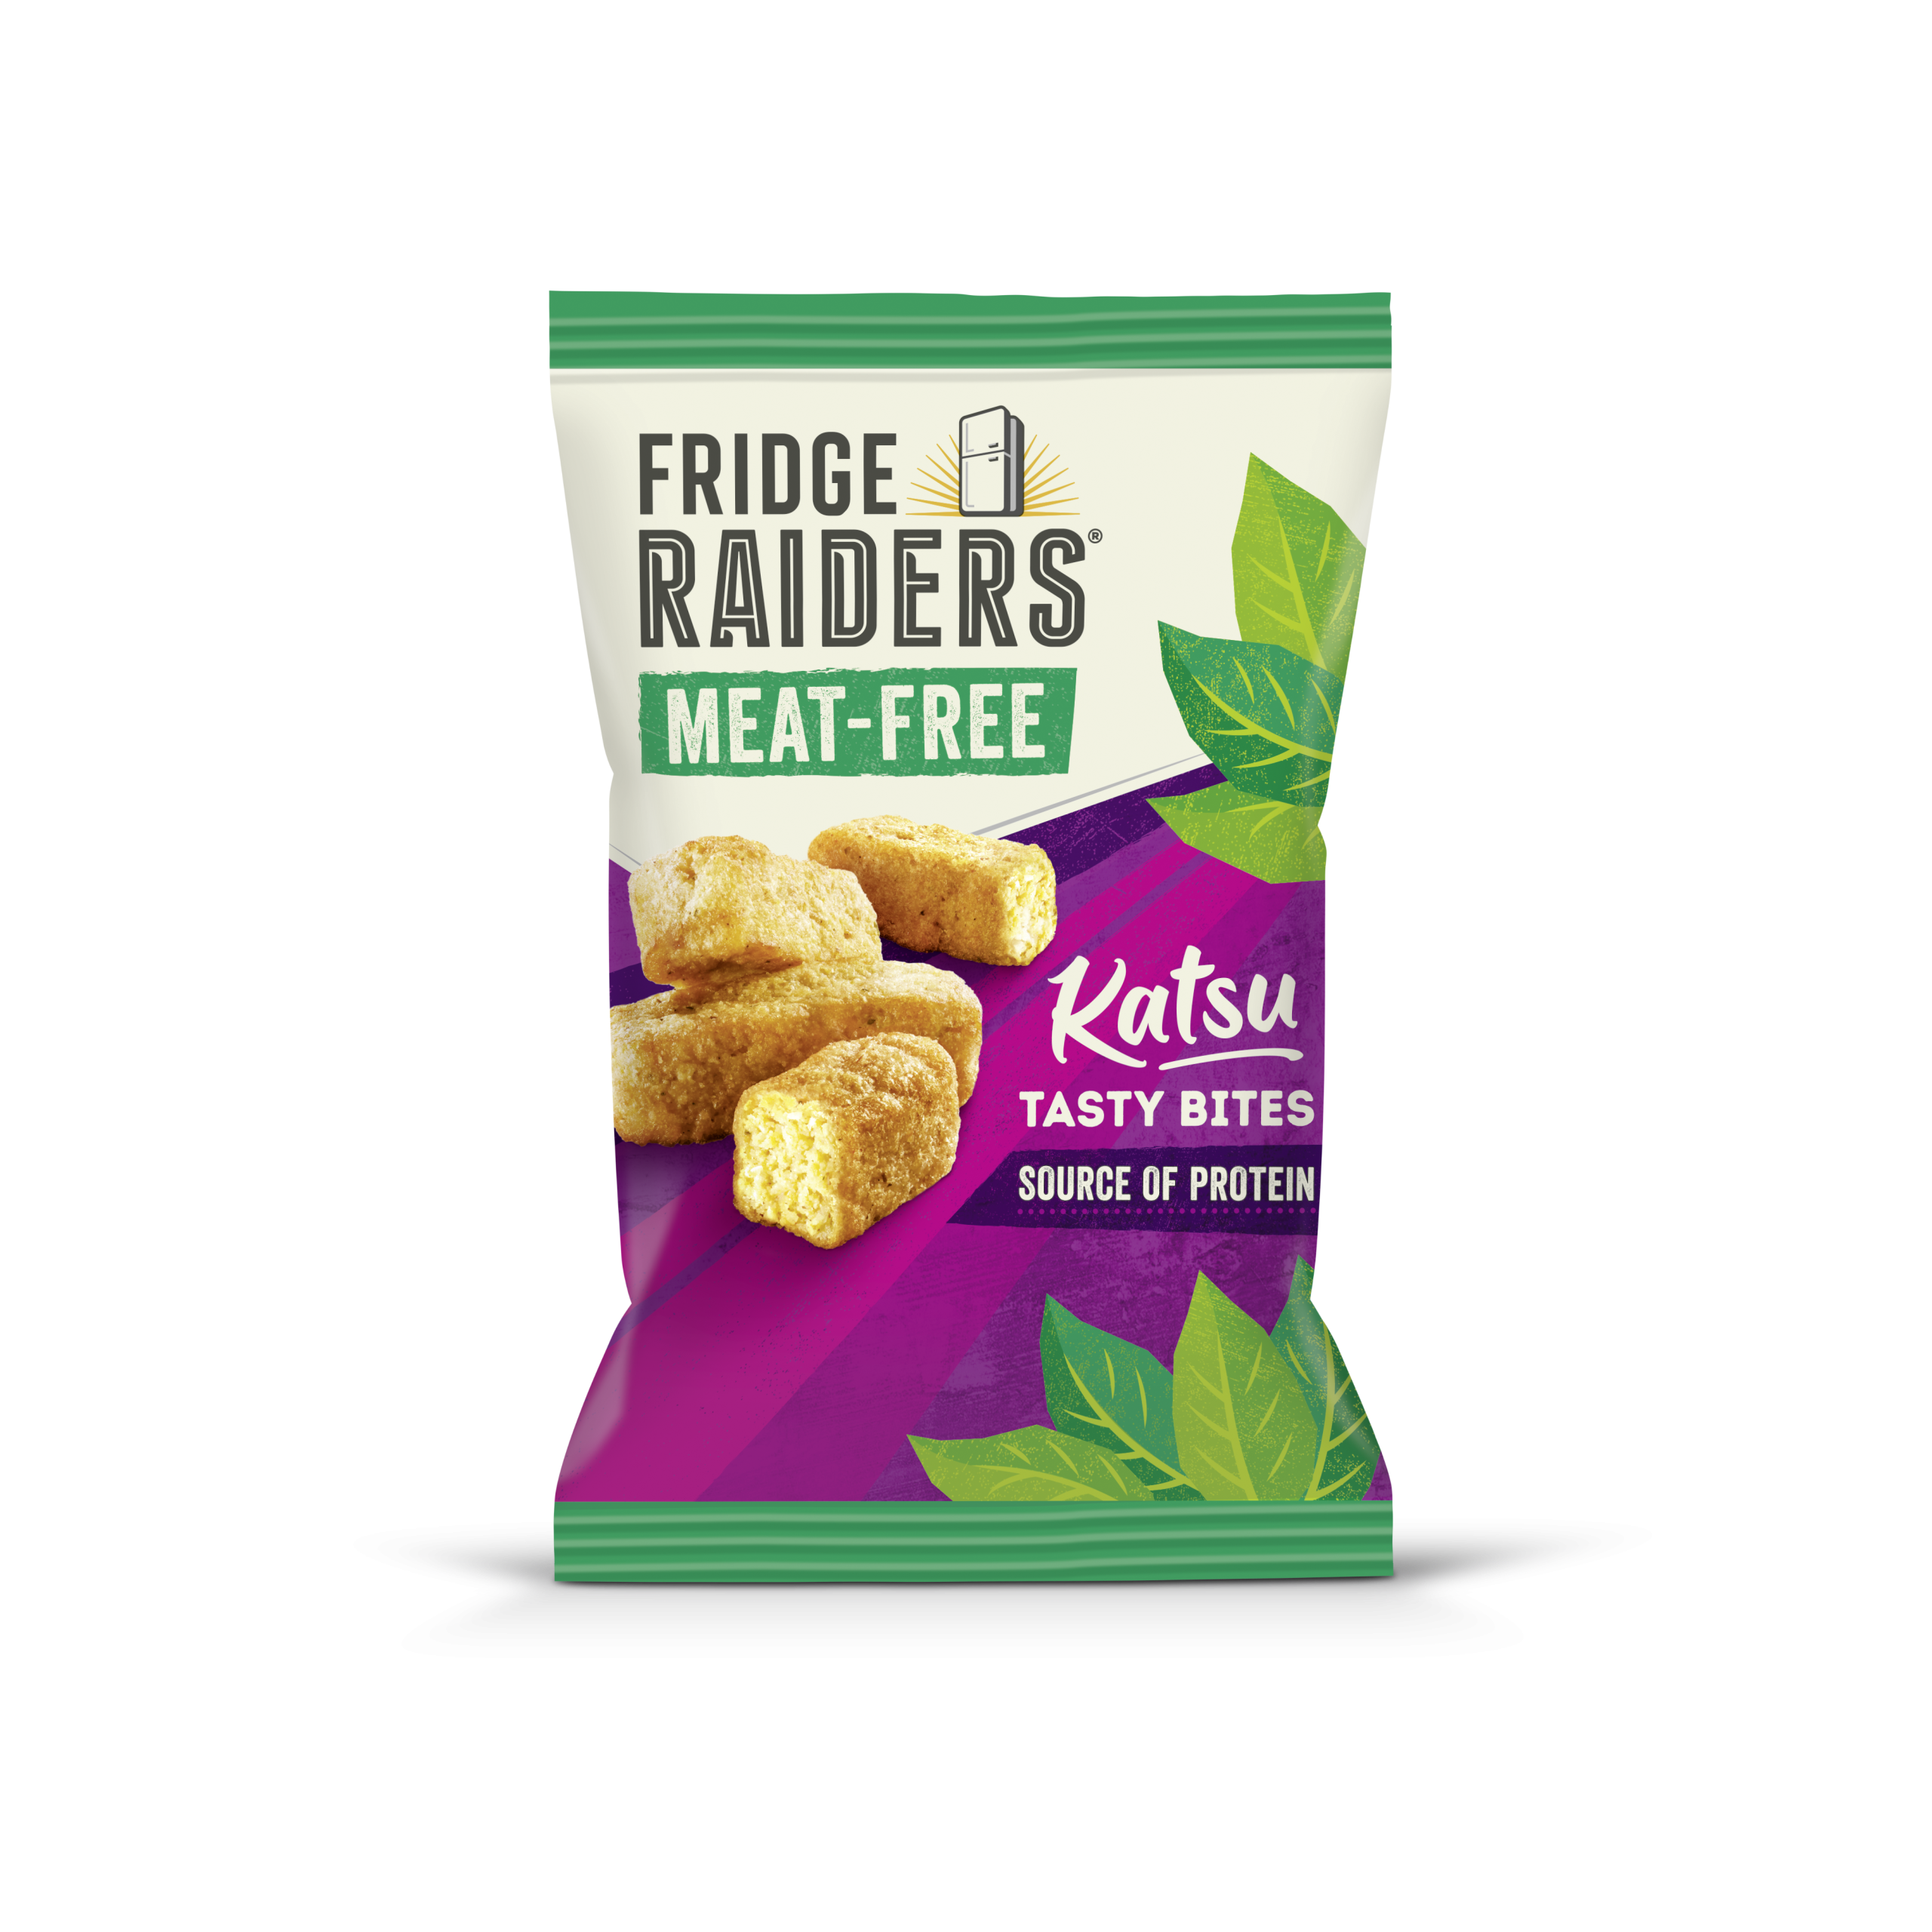 Fridge Raiders shakes up plant-based snacking with Meat-Free Tasty Bites